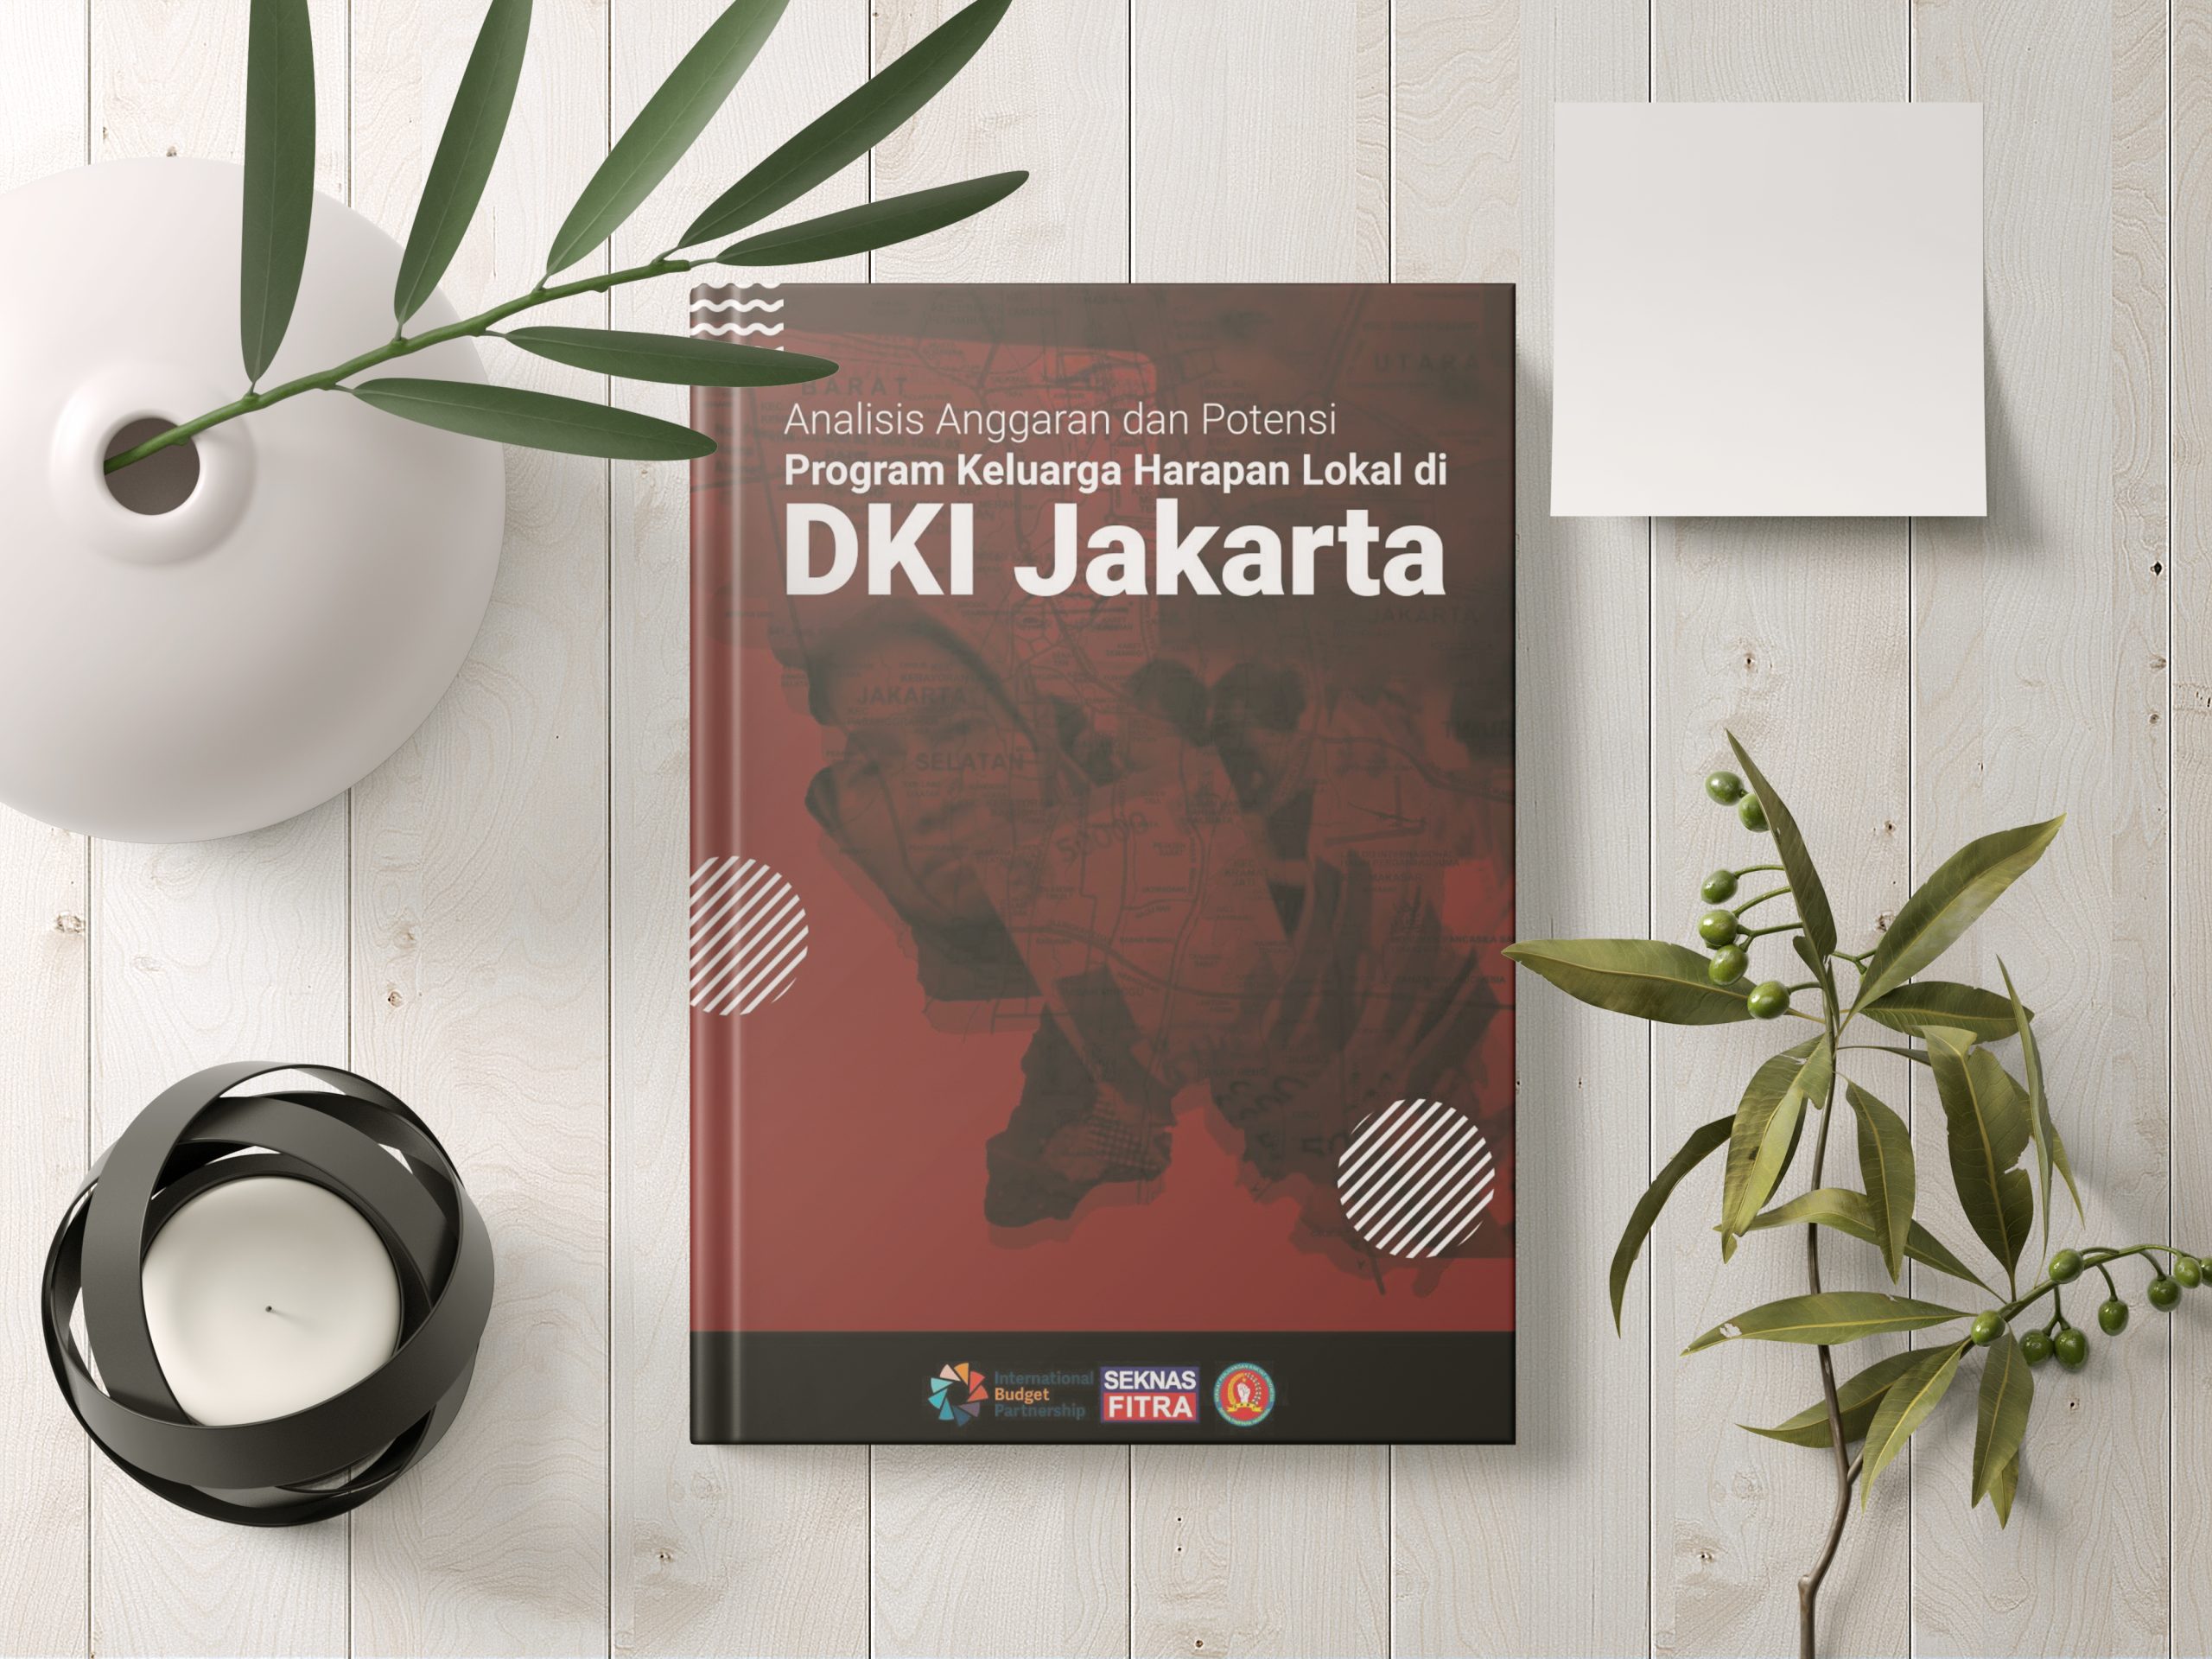 Analisis Anggaran dan Potensi Program Keluarga Harapan Lokal di DKI Jakarta